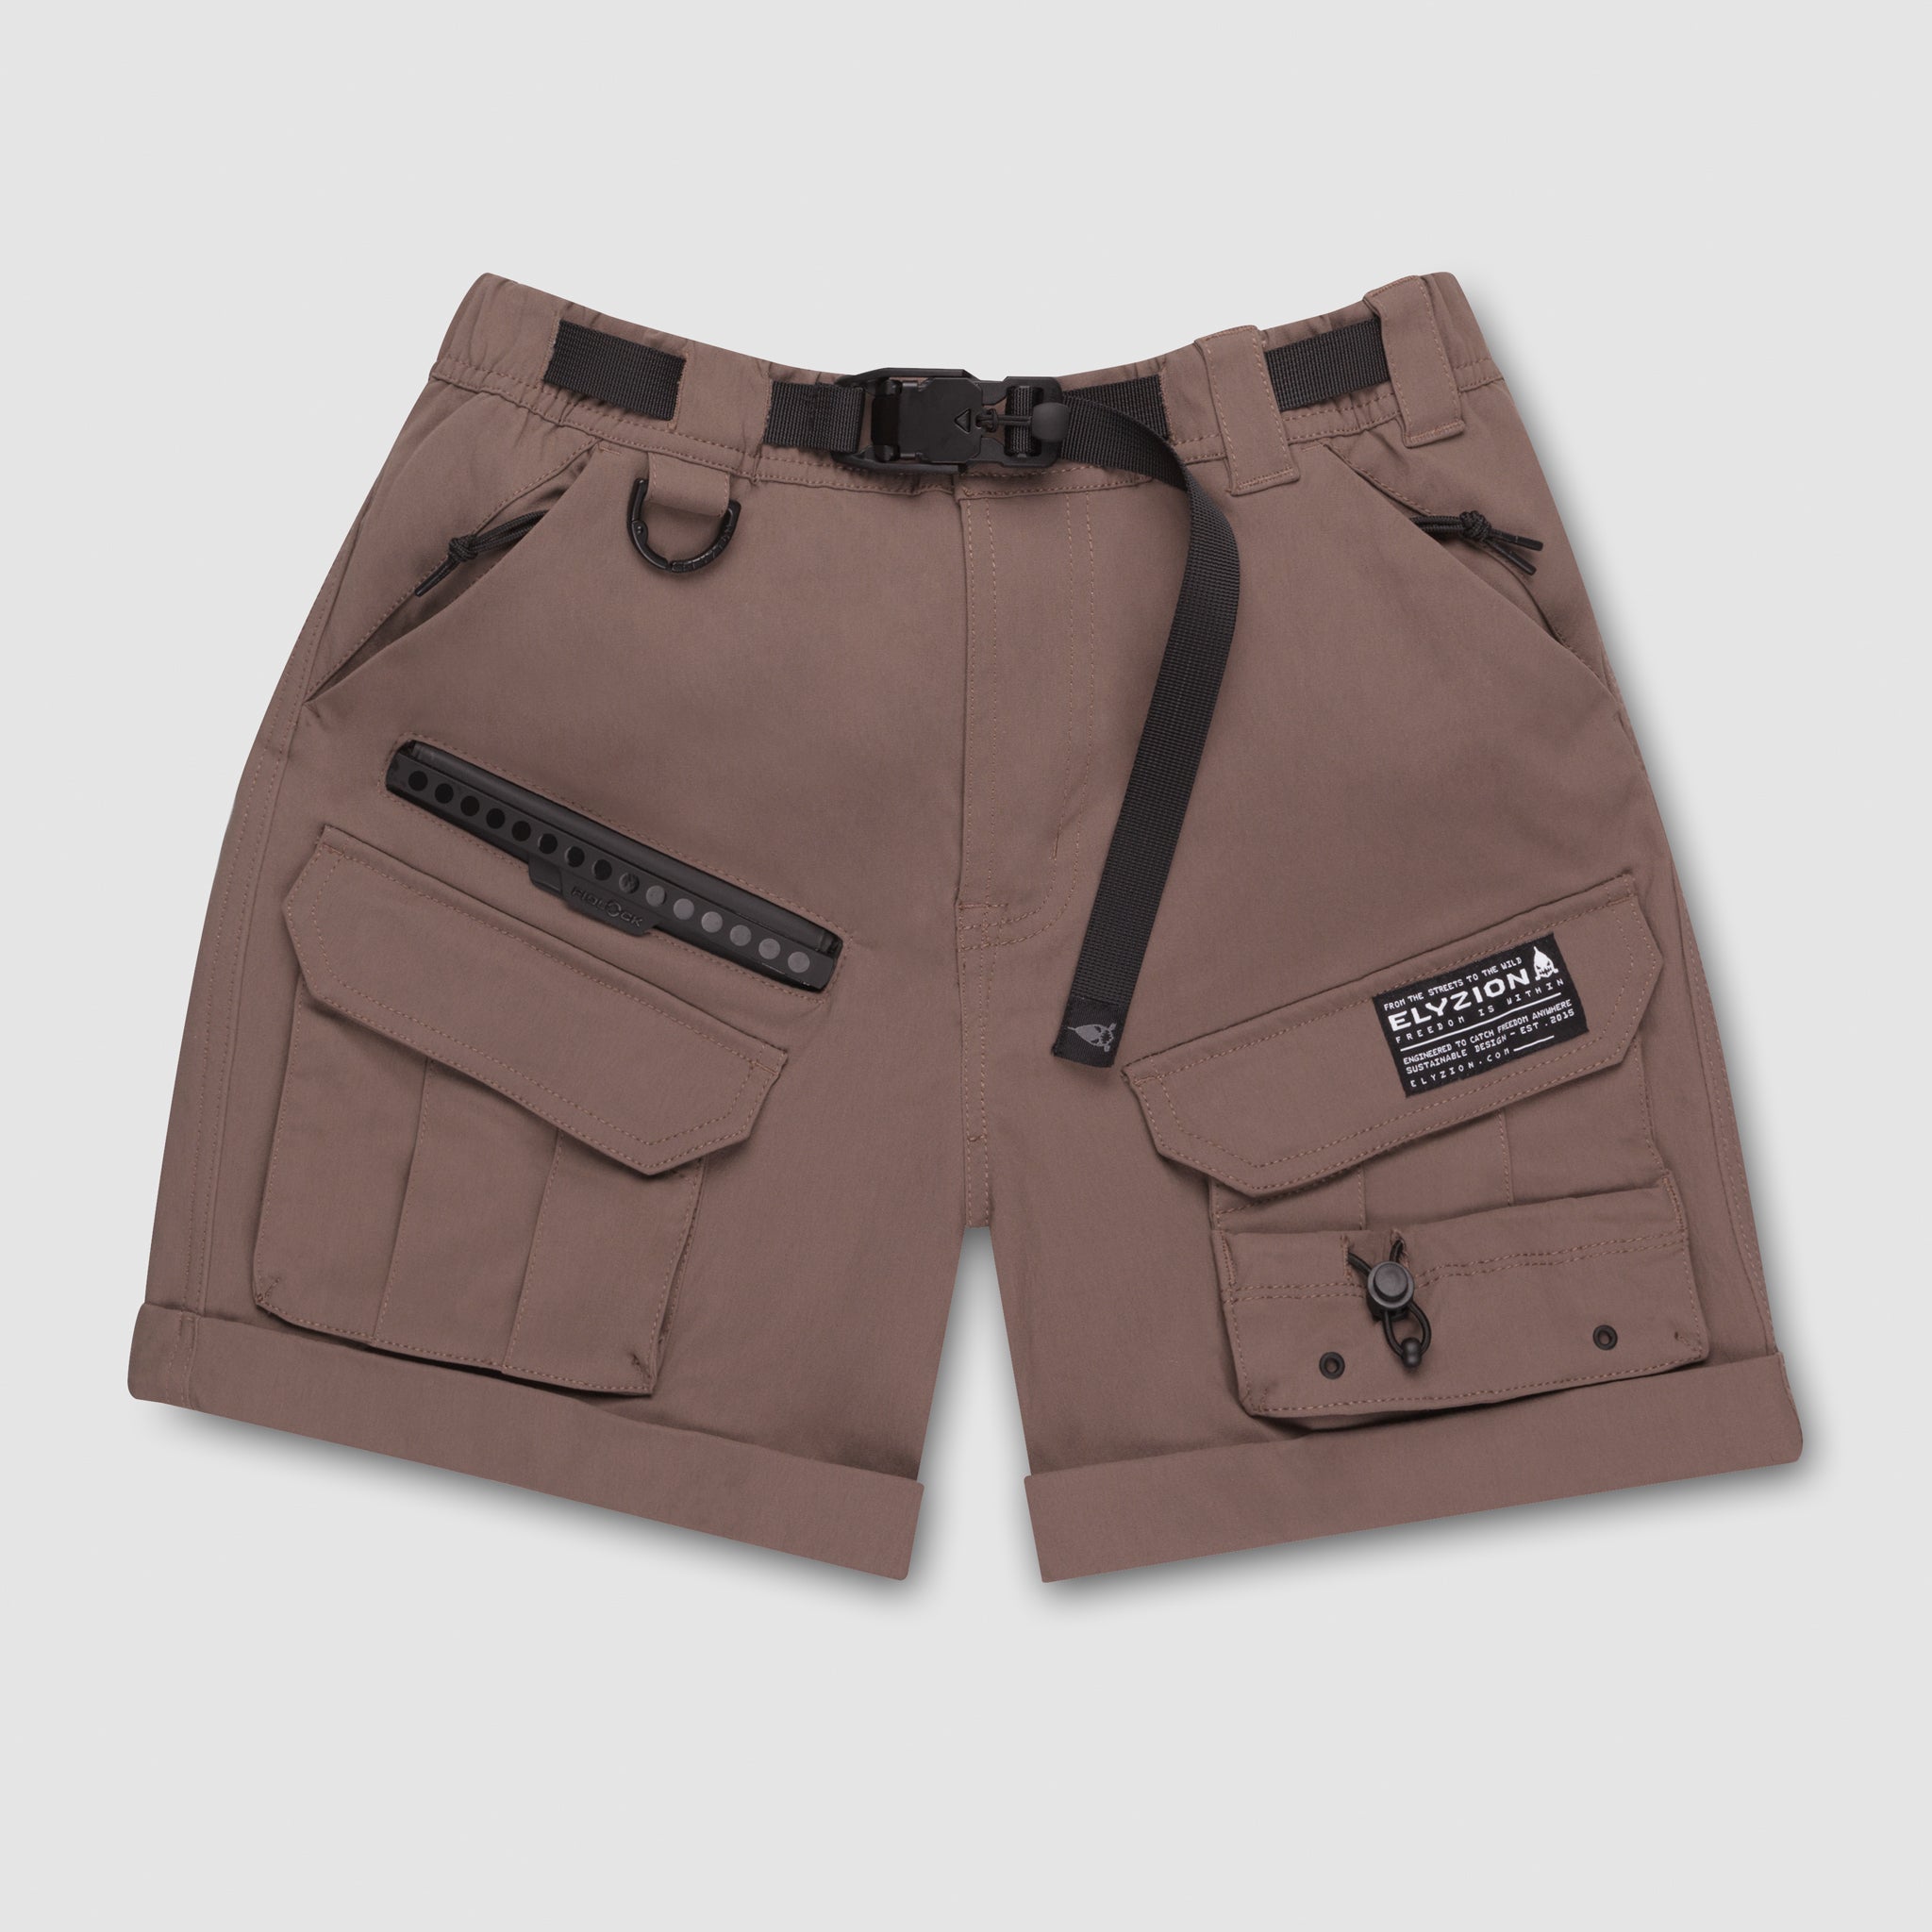 Shop by Category | eBay | Cargo shorts women, Short women fashion, Womens  shorts